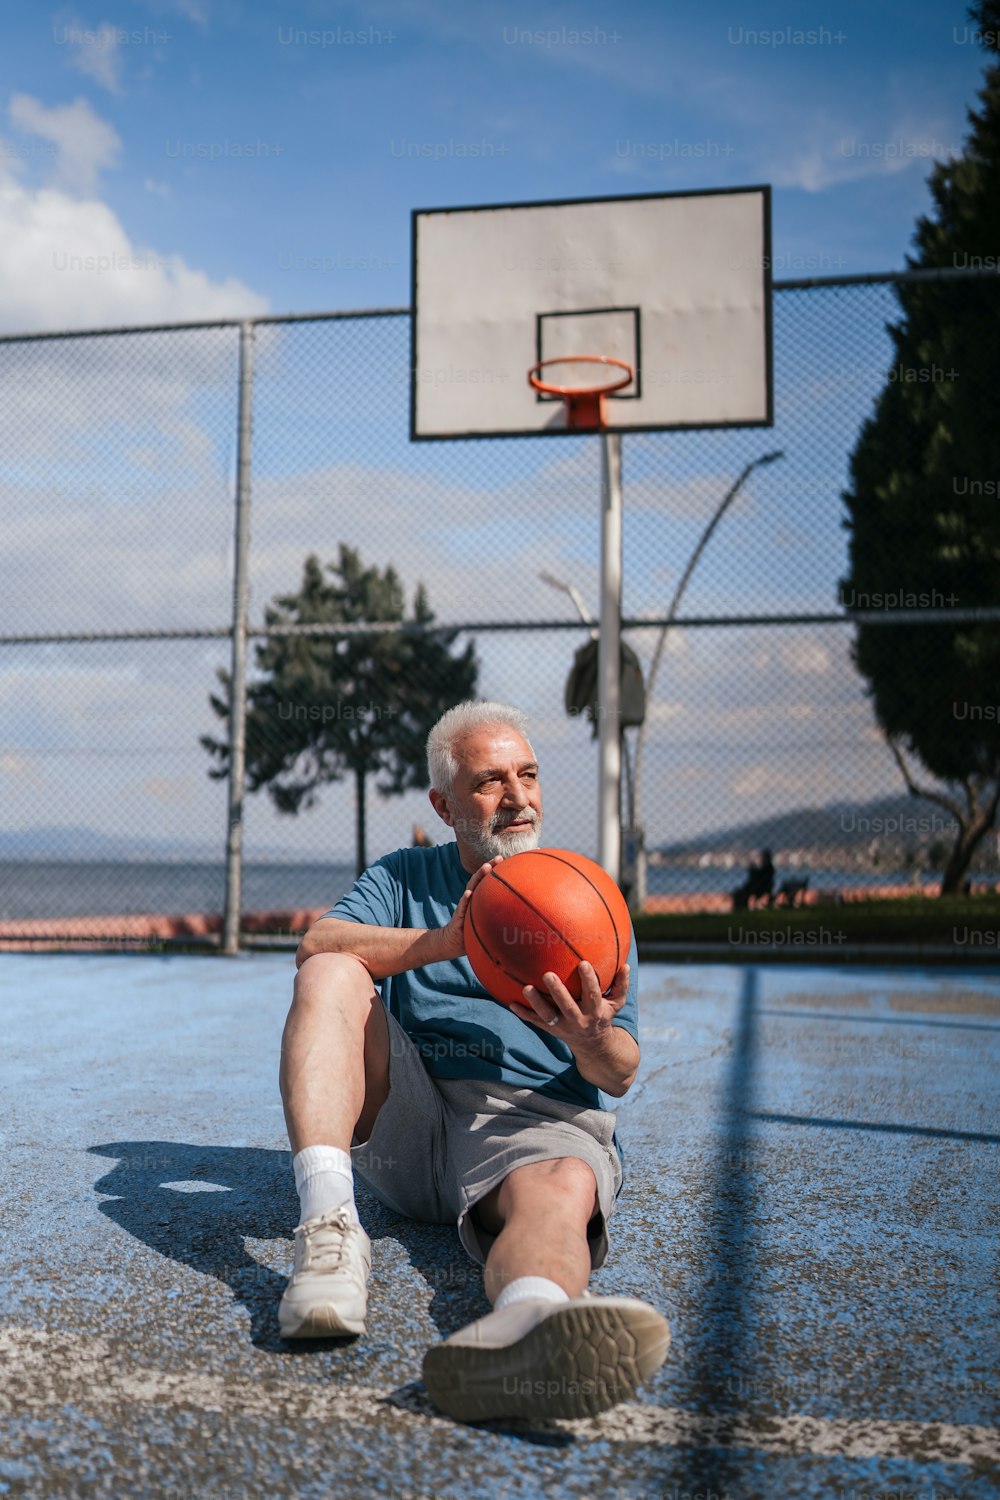 バスケットボールコートに座ってバスケットボールを持っている男性